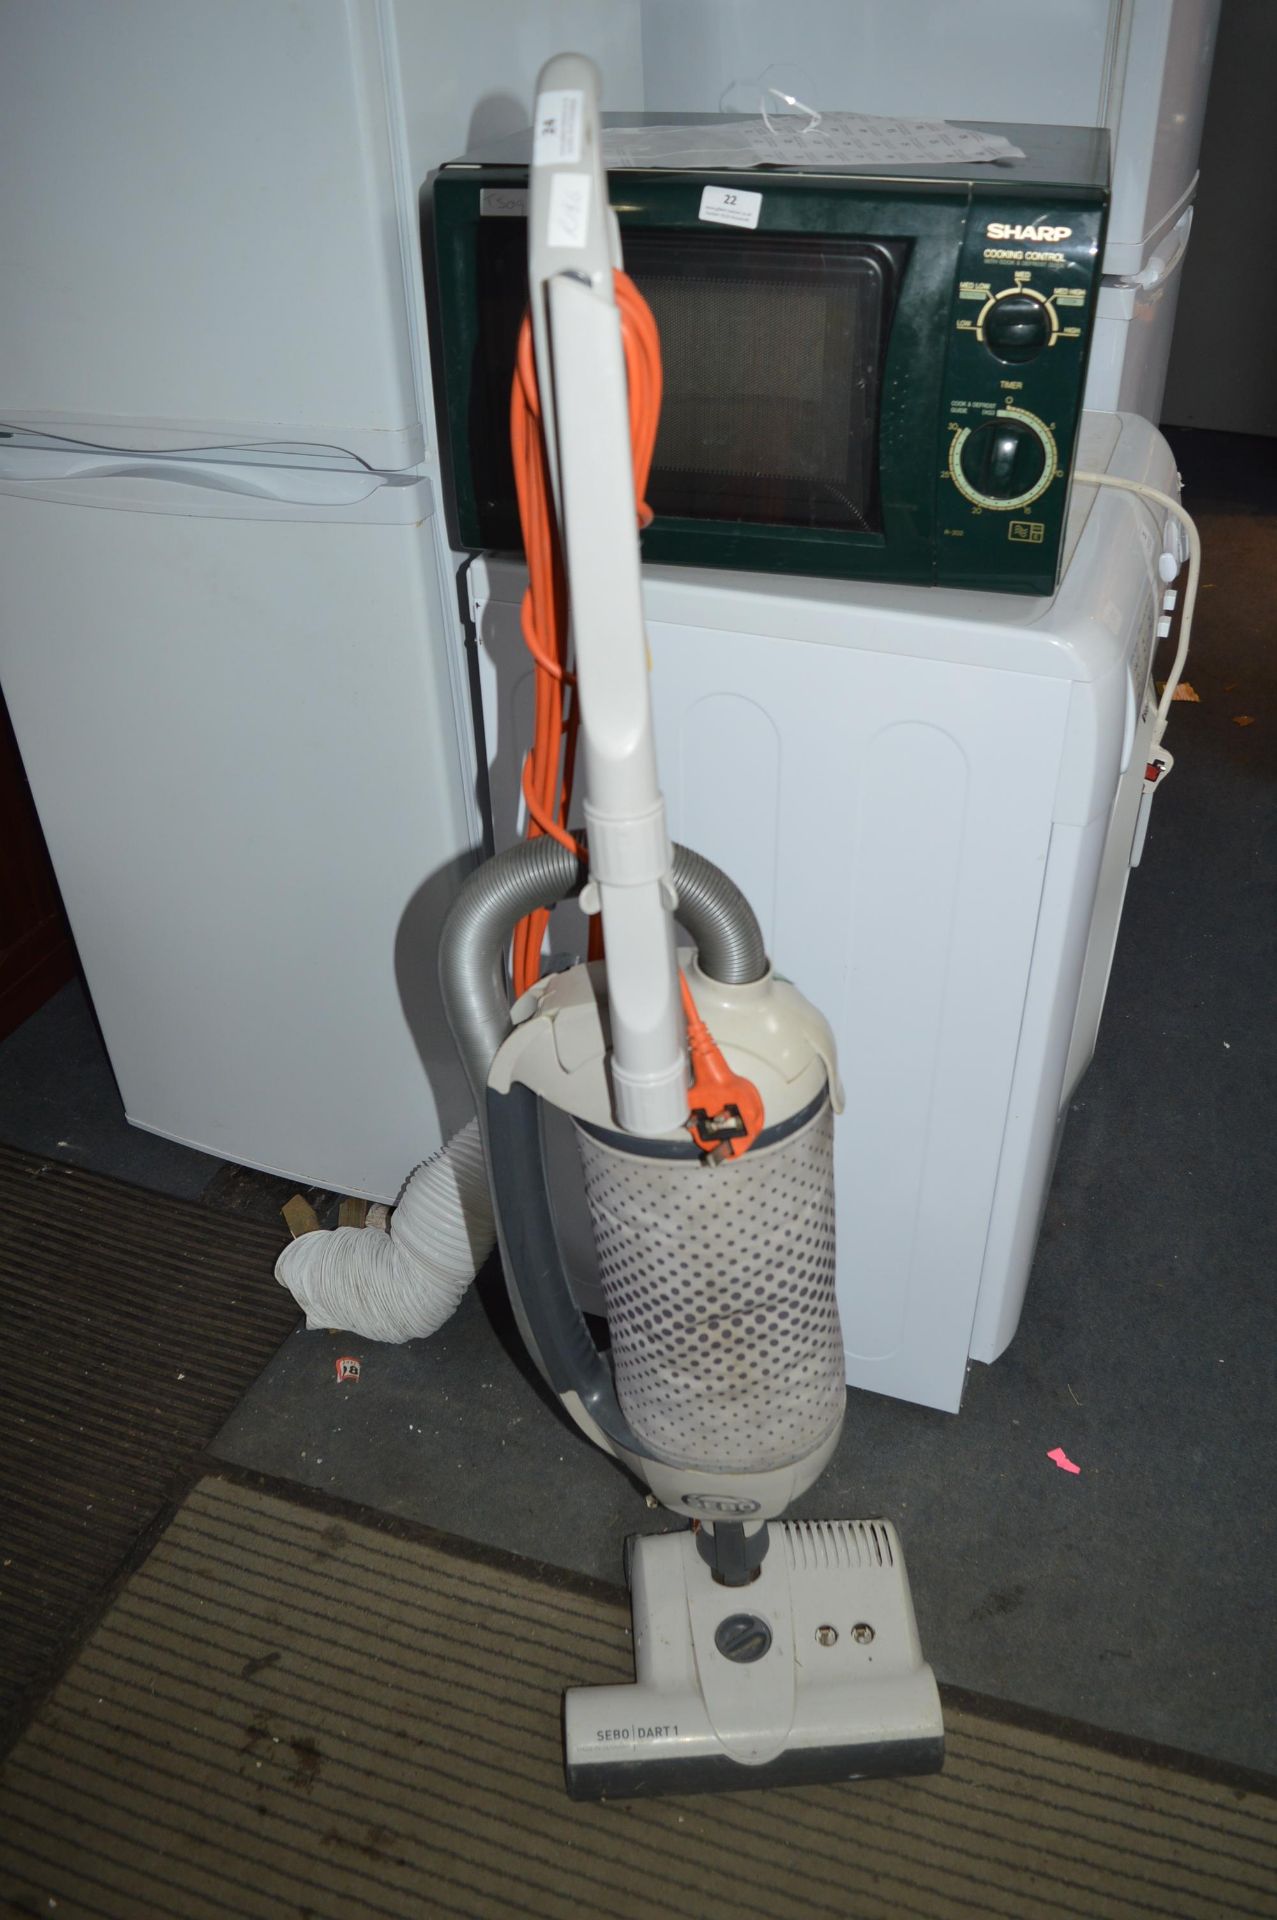 Sebo Dart1 Vacuum Cleaner